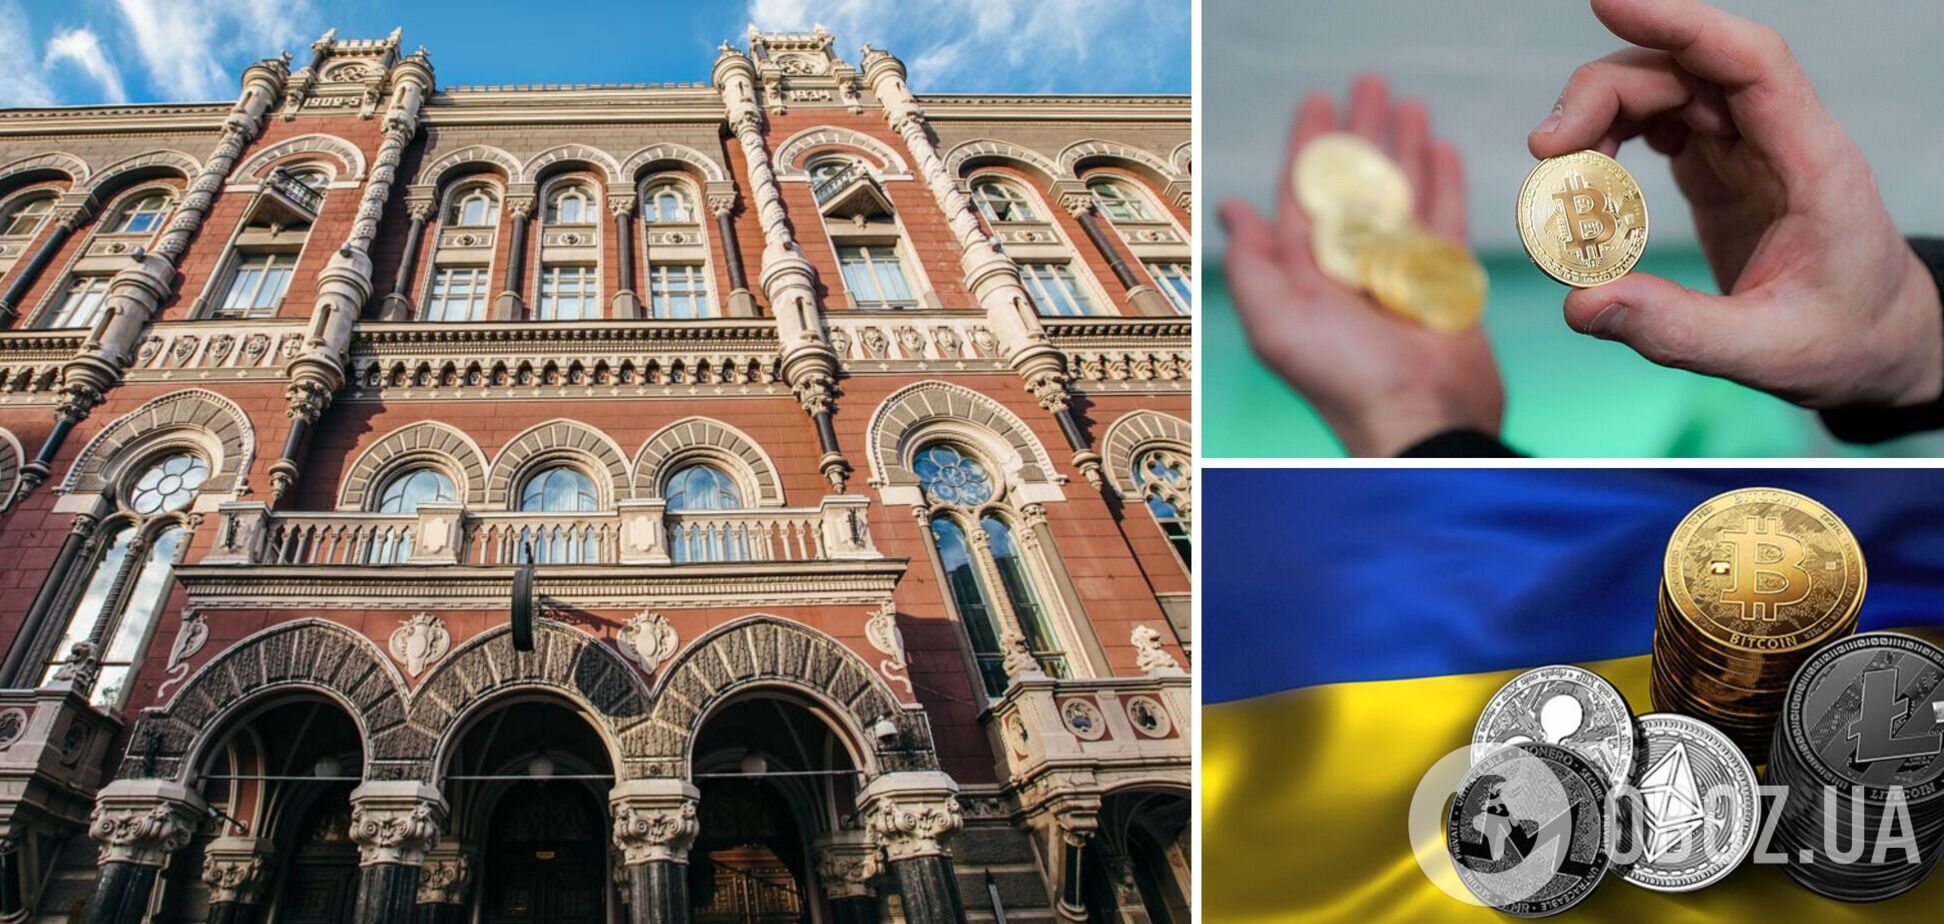 Нацбанк окреслив свої позиції щодо майбутнього криптовалют в Україні